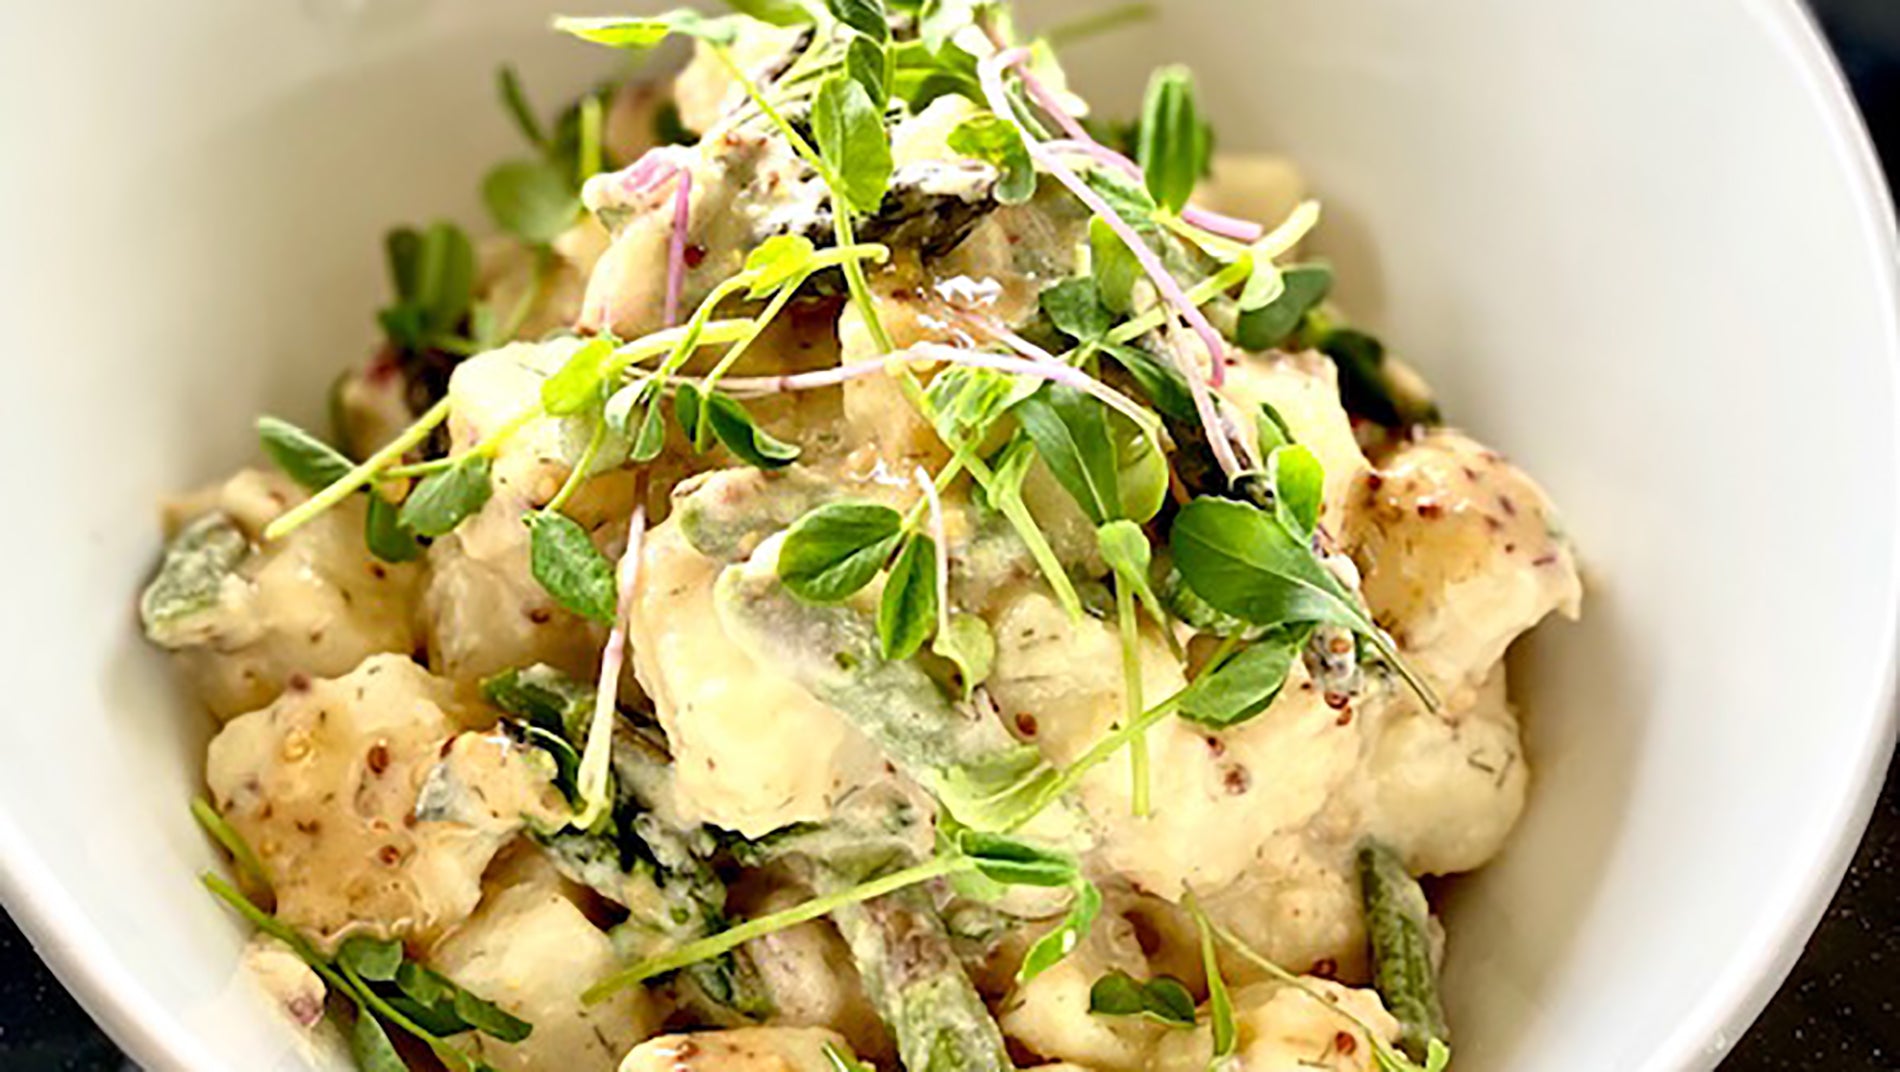 The Beekeeper Potato Salad